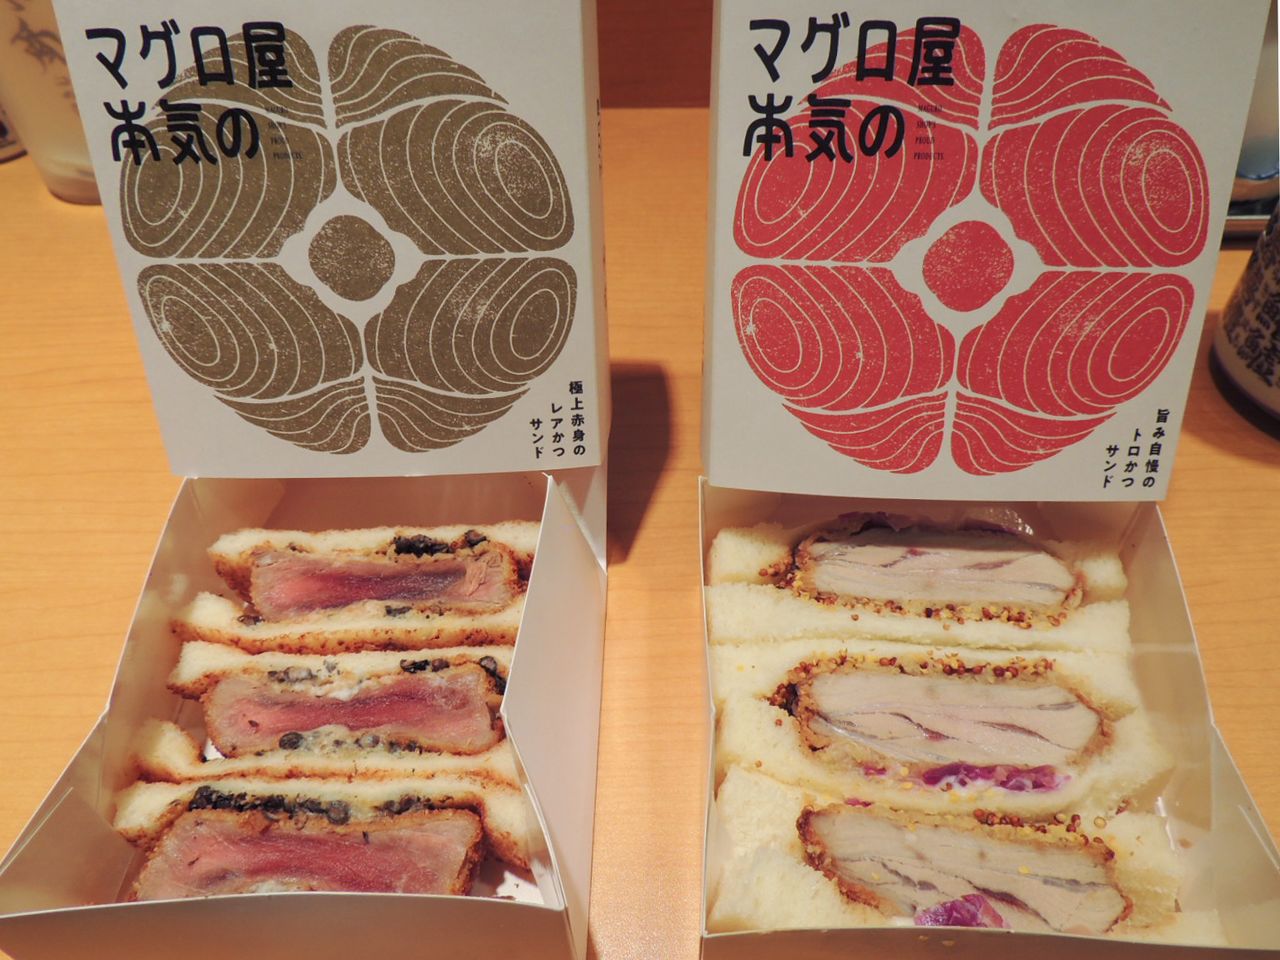 (Gauche) Sandwichs garnis de tranches panées de thon rouge (akami) saignant. (Droite) Sandwichs garnis de tranches panées de toro, le morceau le plus recherché, le plus fondant et le plus coûteux du thon rouge. (© Kawamoto Daigo)